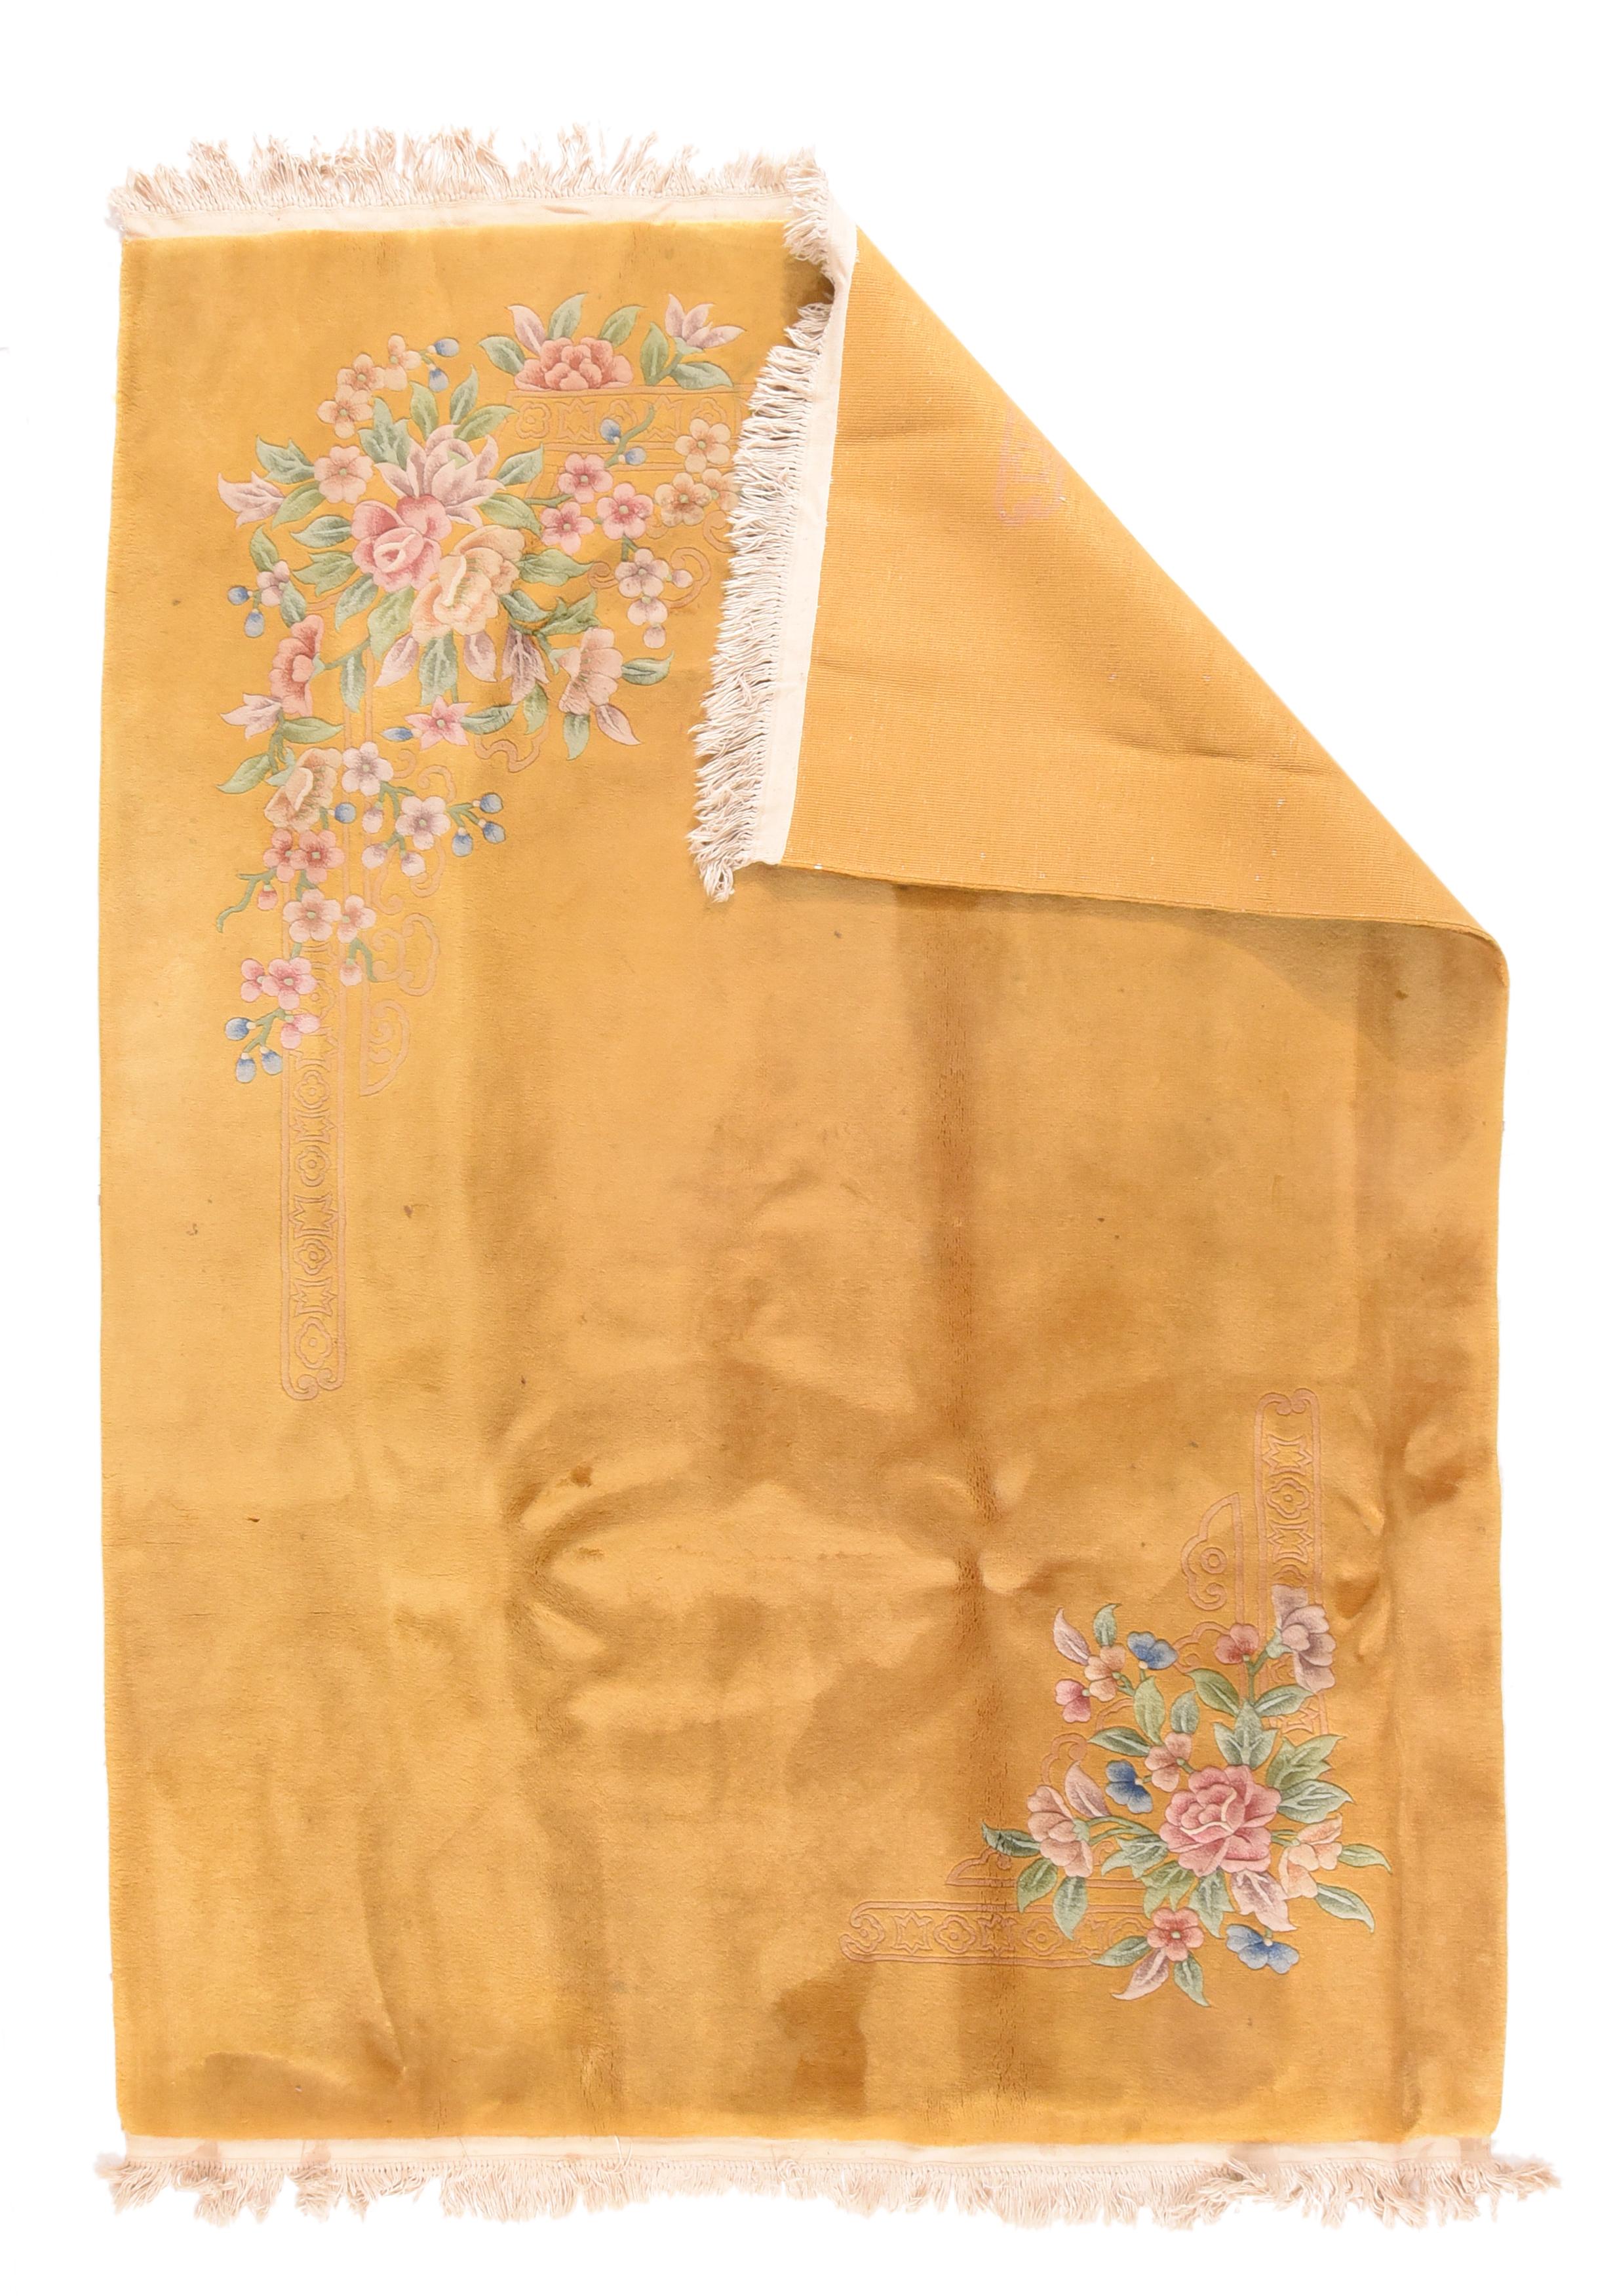 Vintage Chinese rug 5'9'' x 7'10''. Das gesamte gold-ockerfarbene Feld dieses Teppichs im Tientsin-Nichols-Stil aus der Zwischenkriegszeit zeigt ein asymmetrisches Muster, das aus zwei verschiedenen floralen Eckmotiven besteht, die jeweils von einer